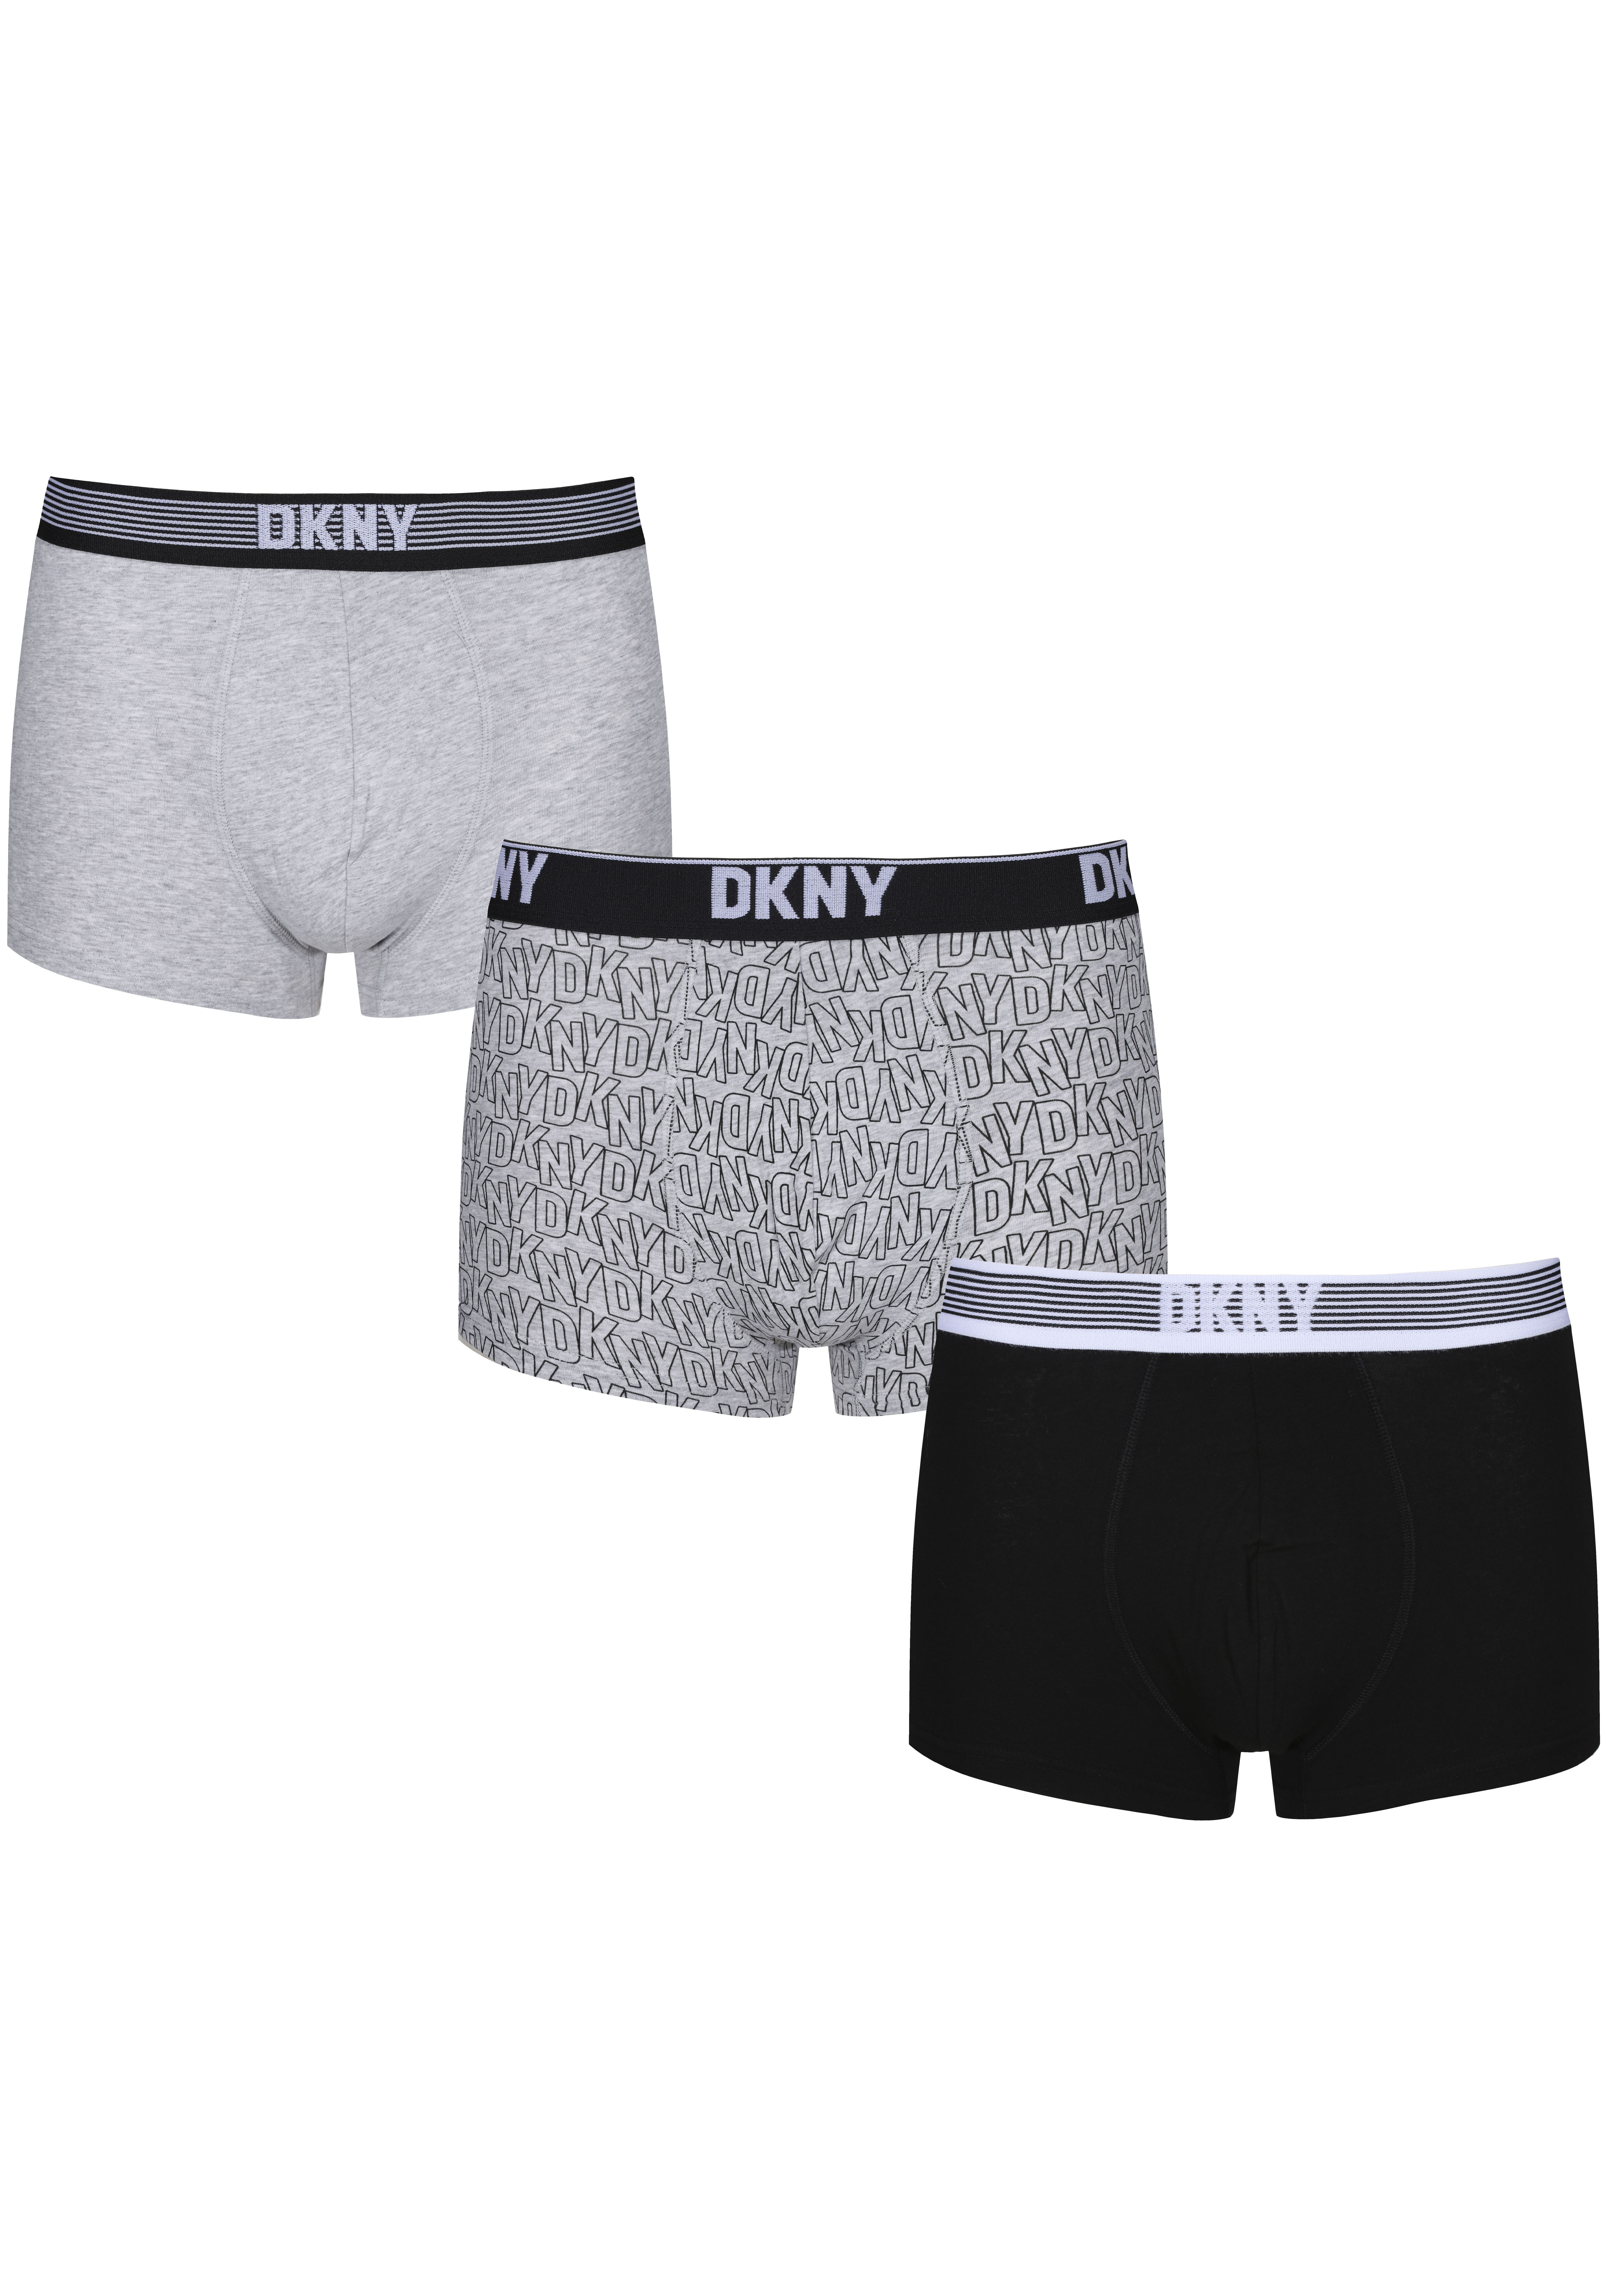 DKNY Trunk »GENEVA« kaufen